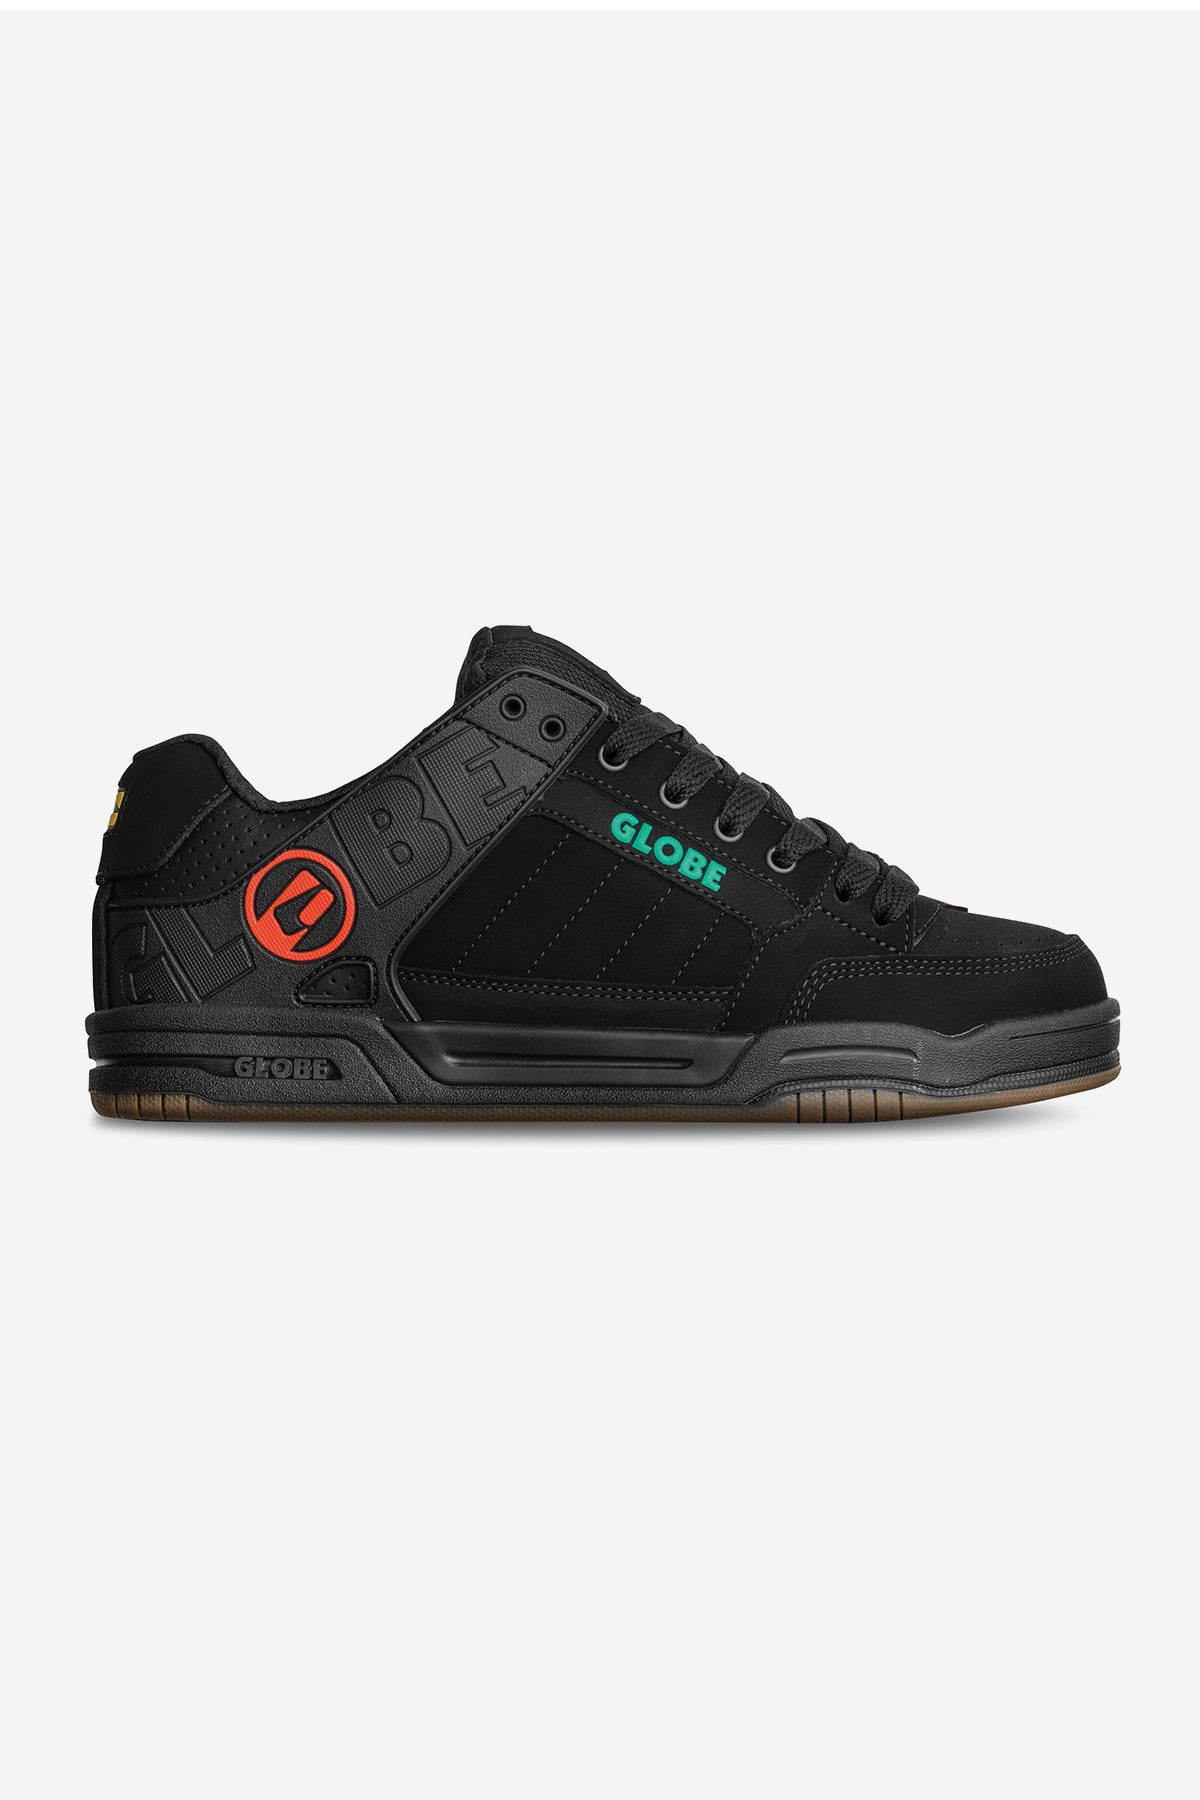 tilt black rasta skateboard chaussures